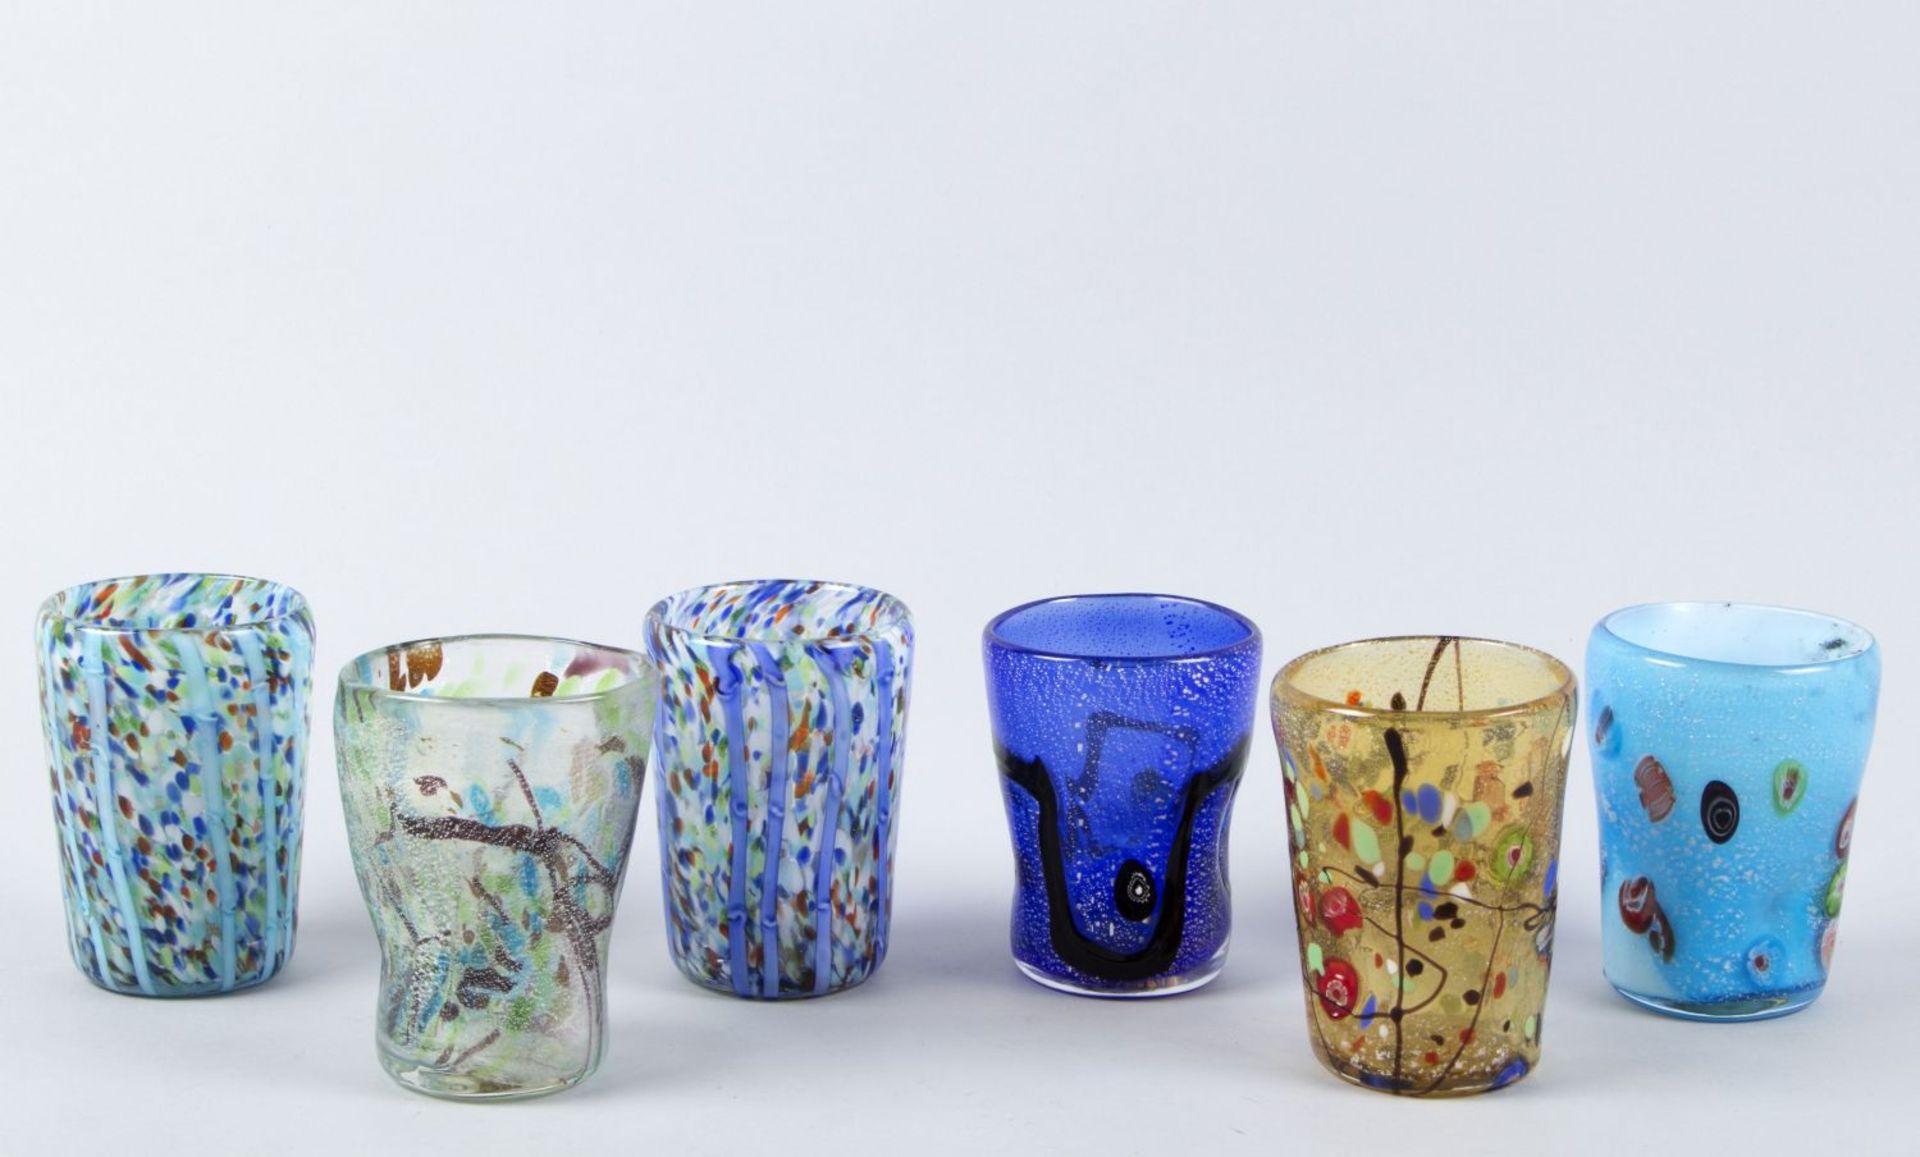 Sechs BecherFarbloses Glas. Versch.farbige Dekore, u.a. blau bzw. weiß unterfangen. Polychrome